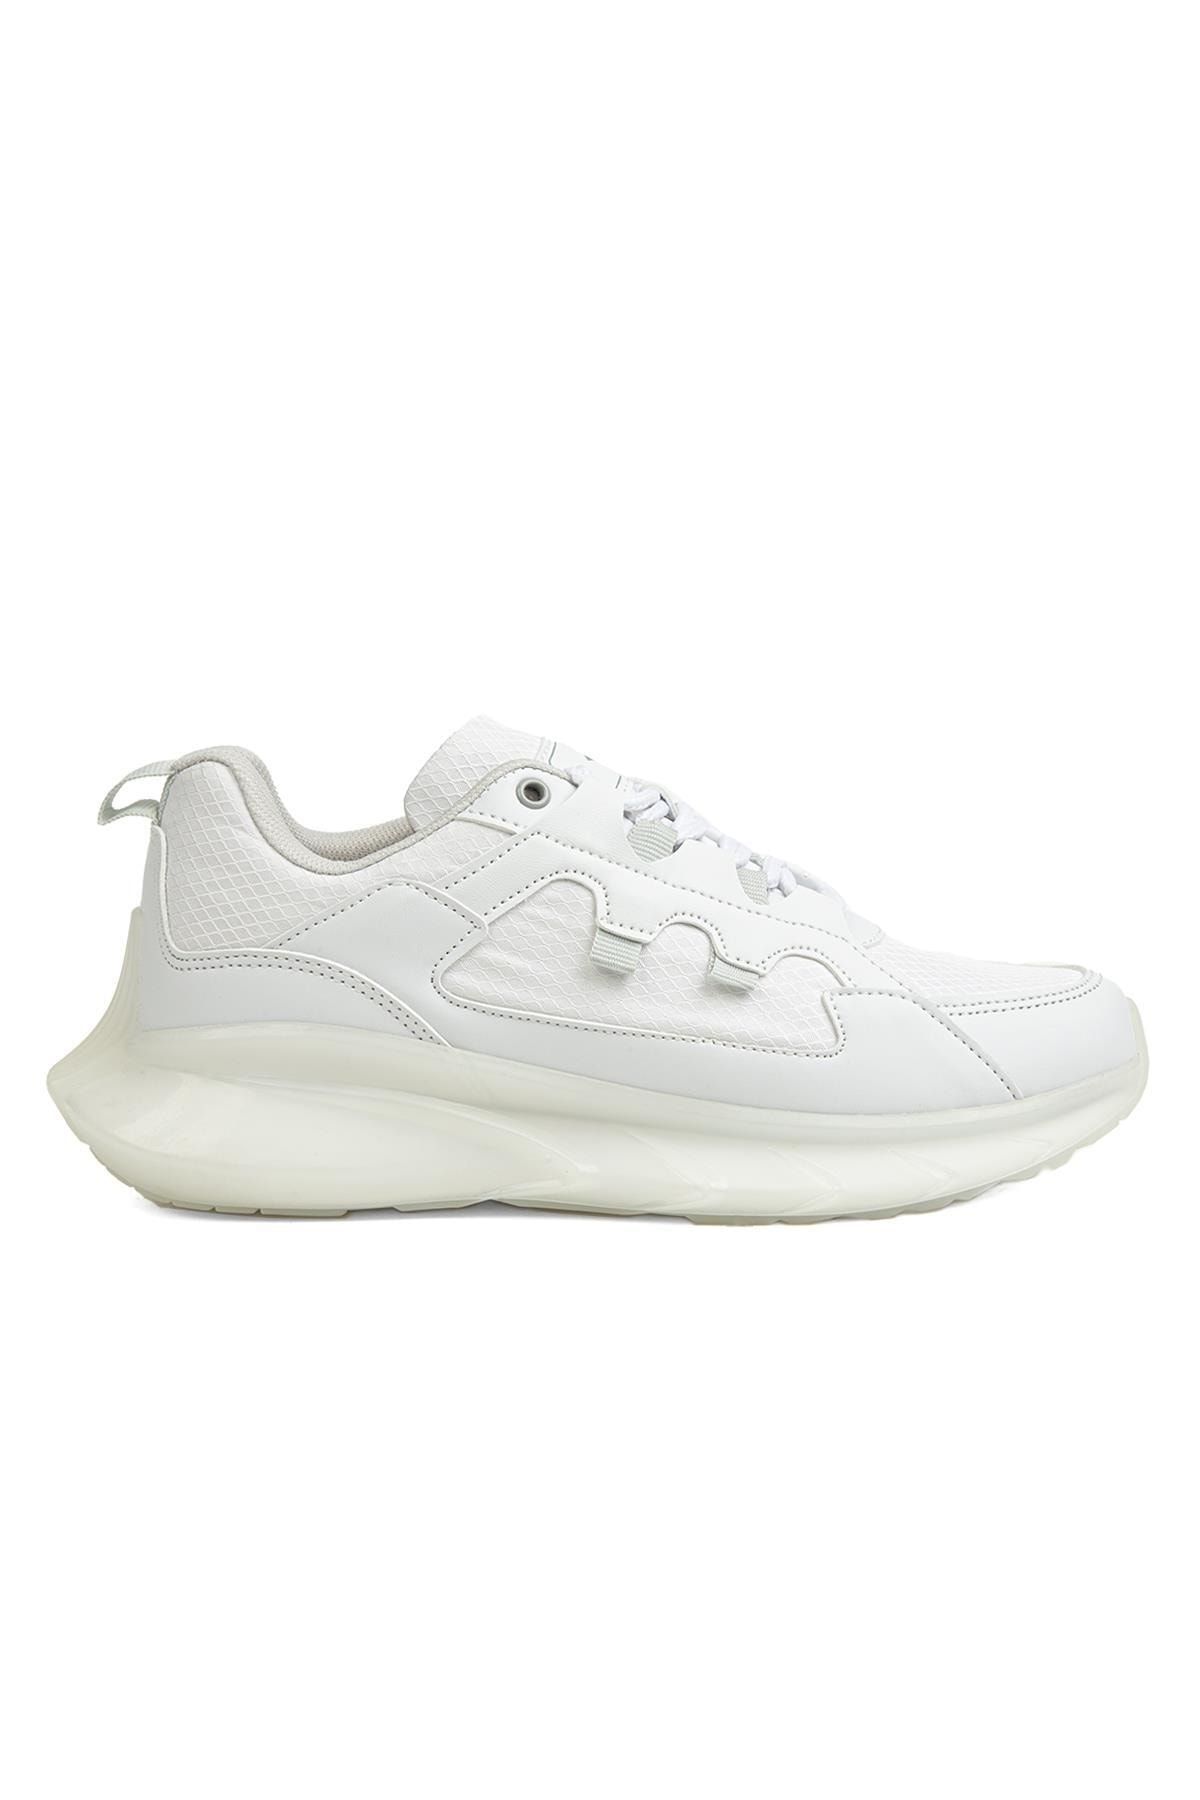 Dunlop ® | Dnp-2031-3511 Beyaz - Kadın Spor Ayakkabı